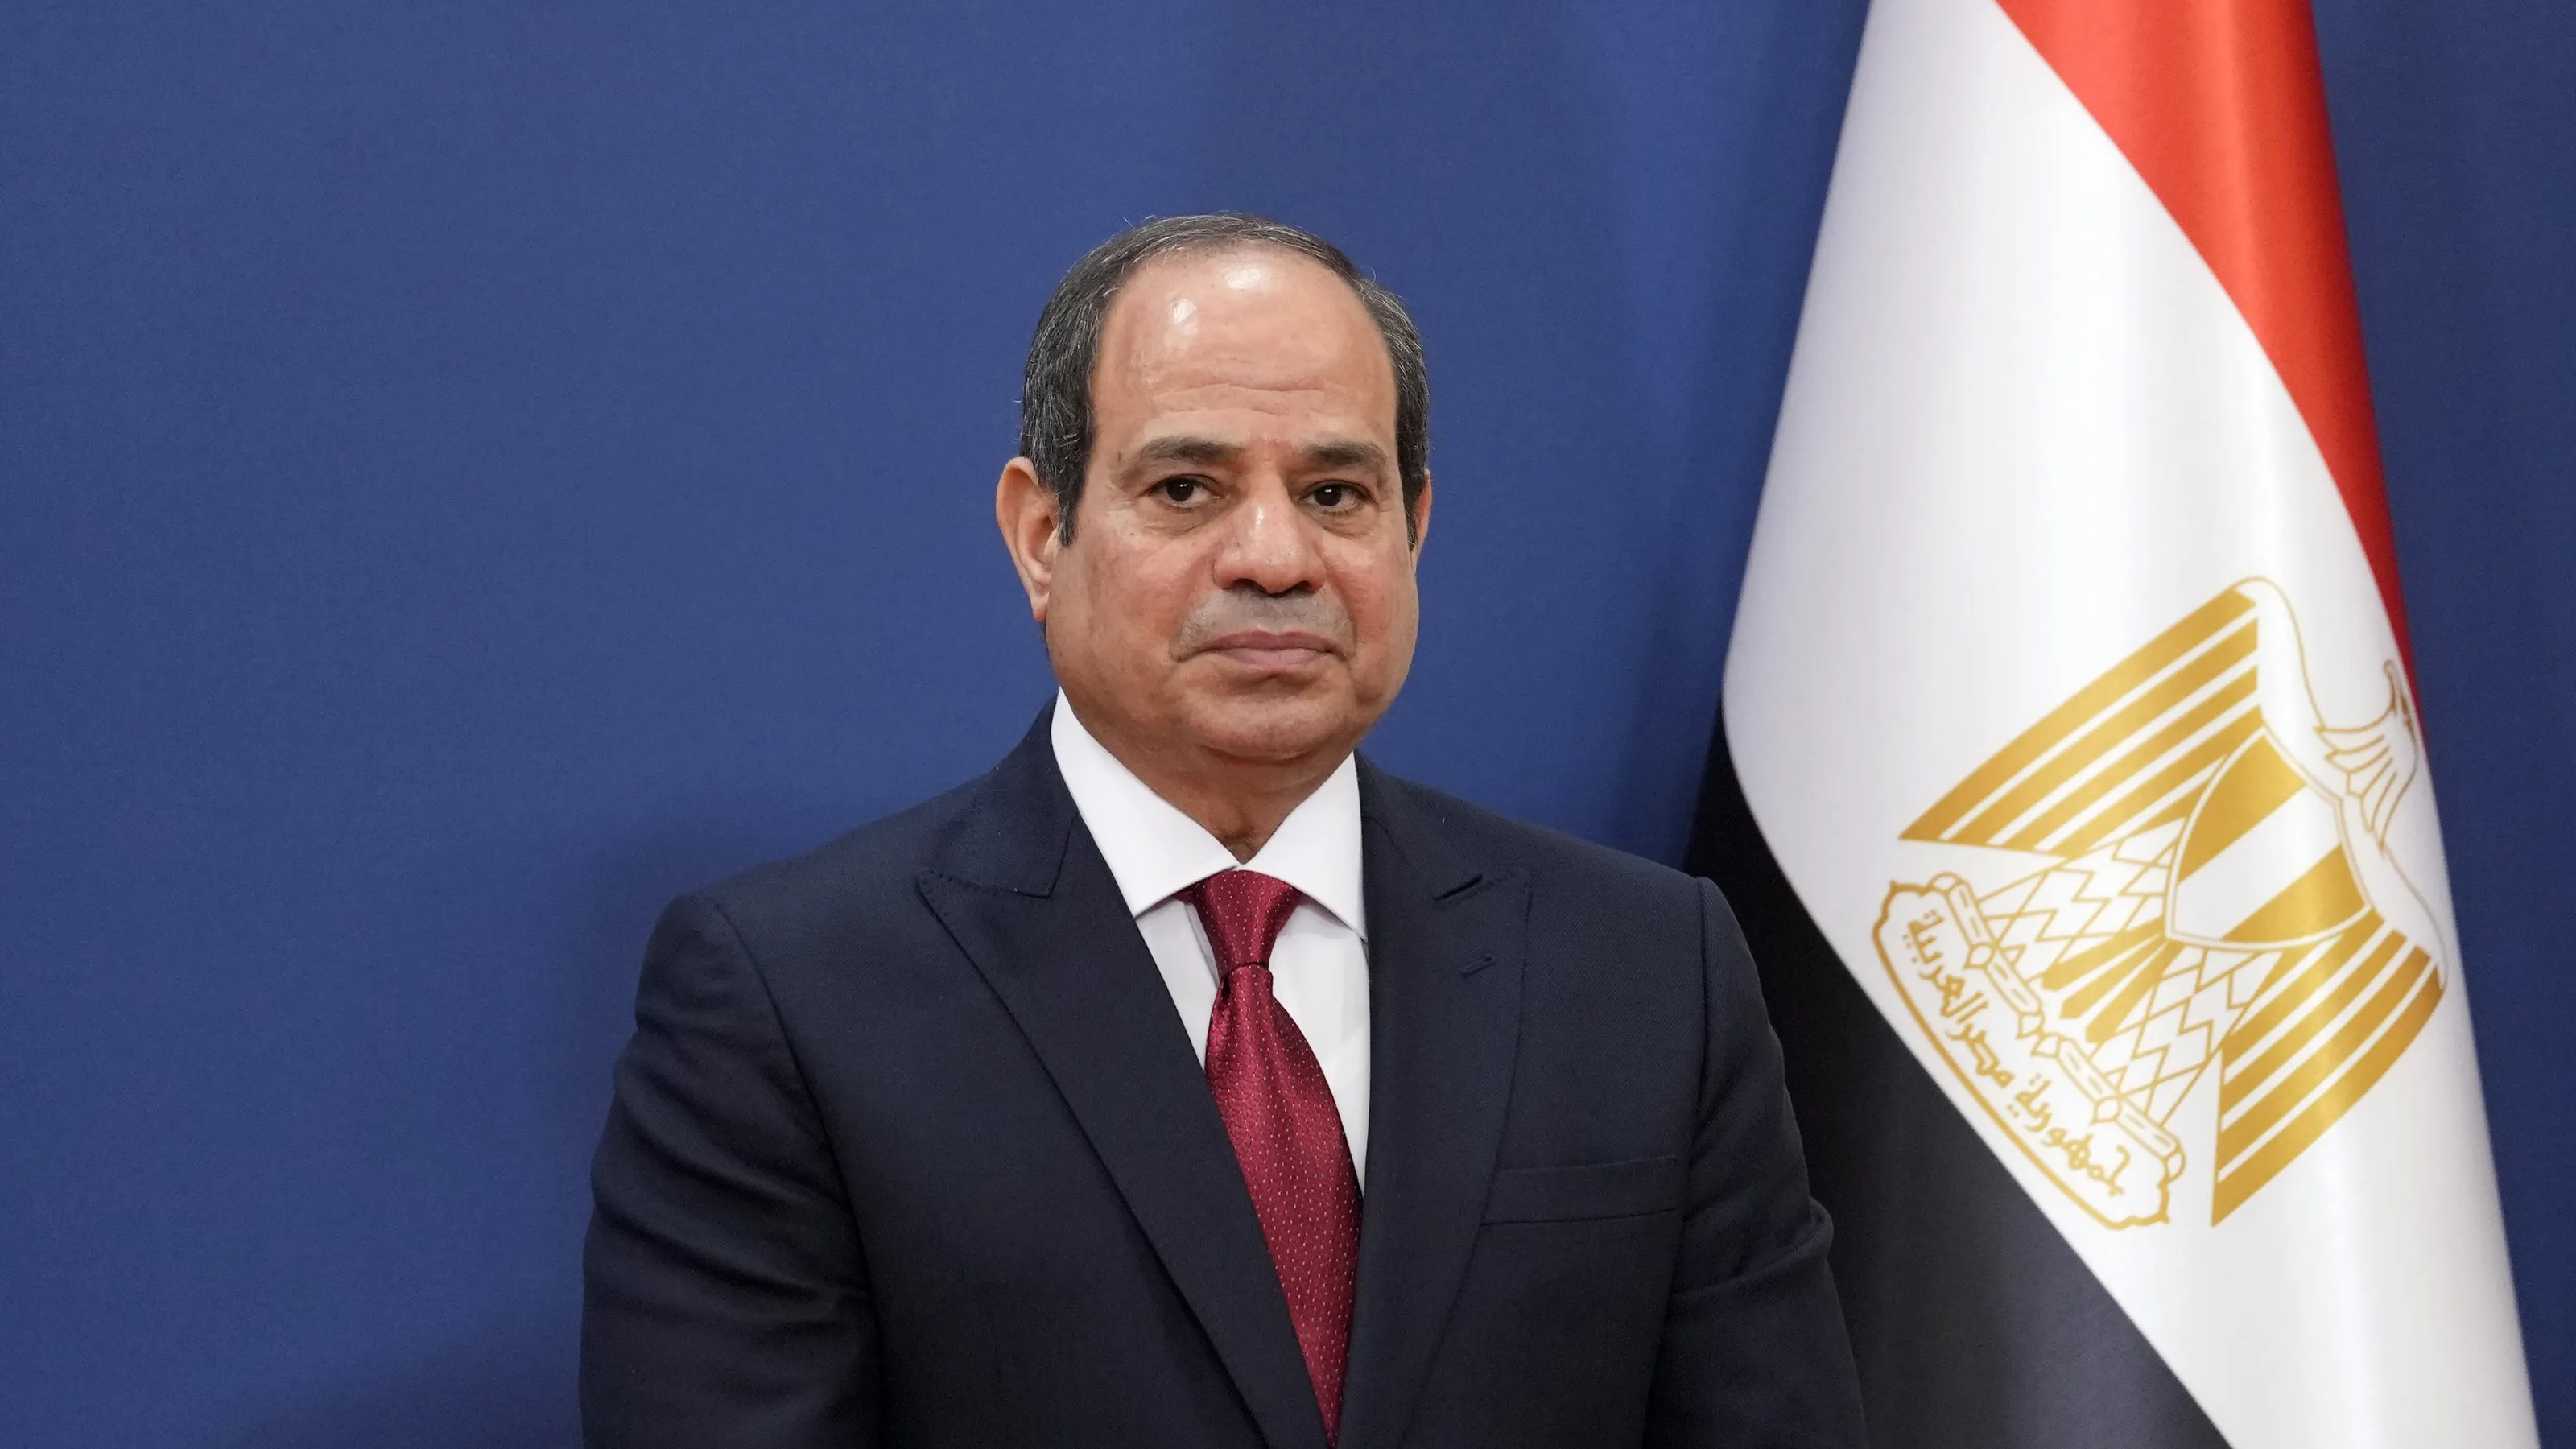 الرئيس المصري يدعو لضمان عدم تهجير الفلسطينيين قسراً من غزة